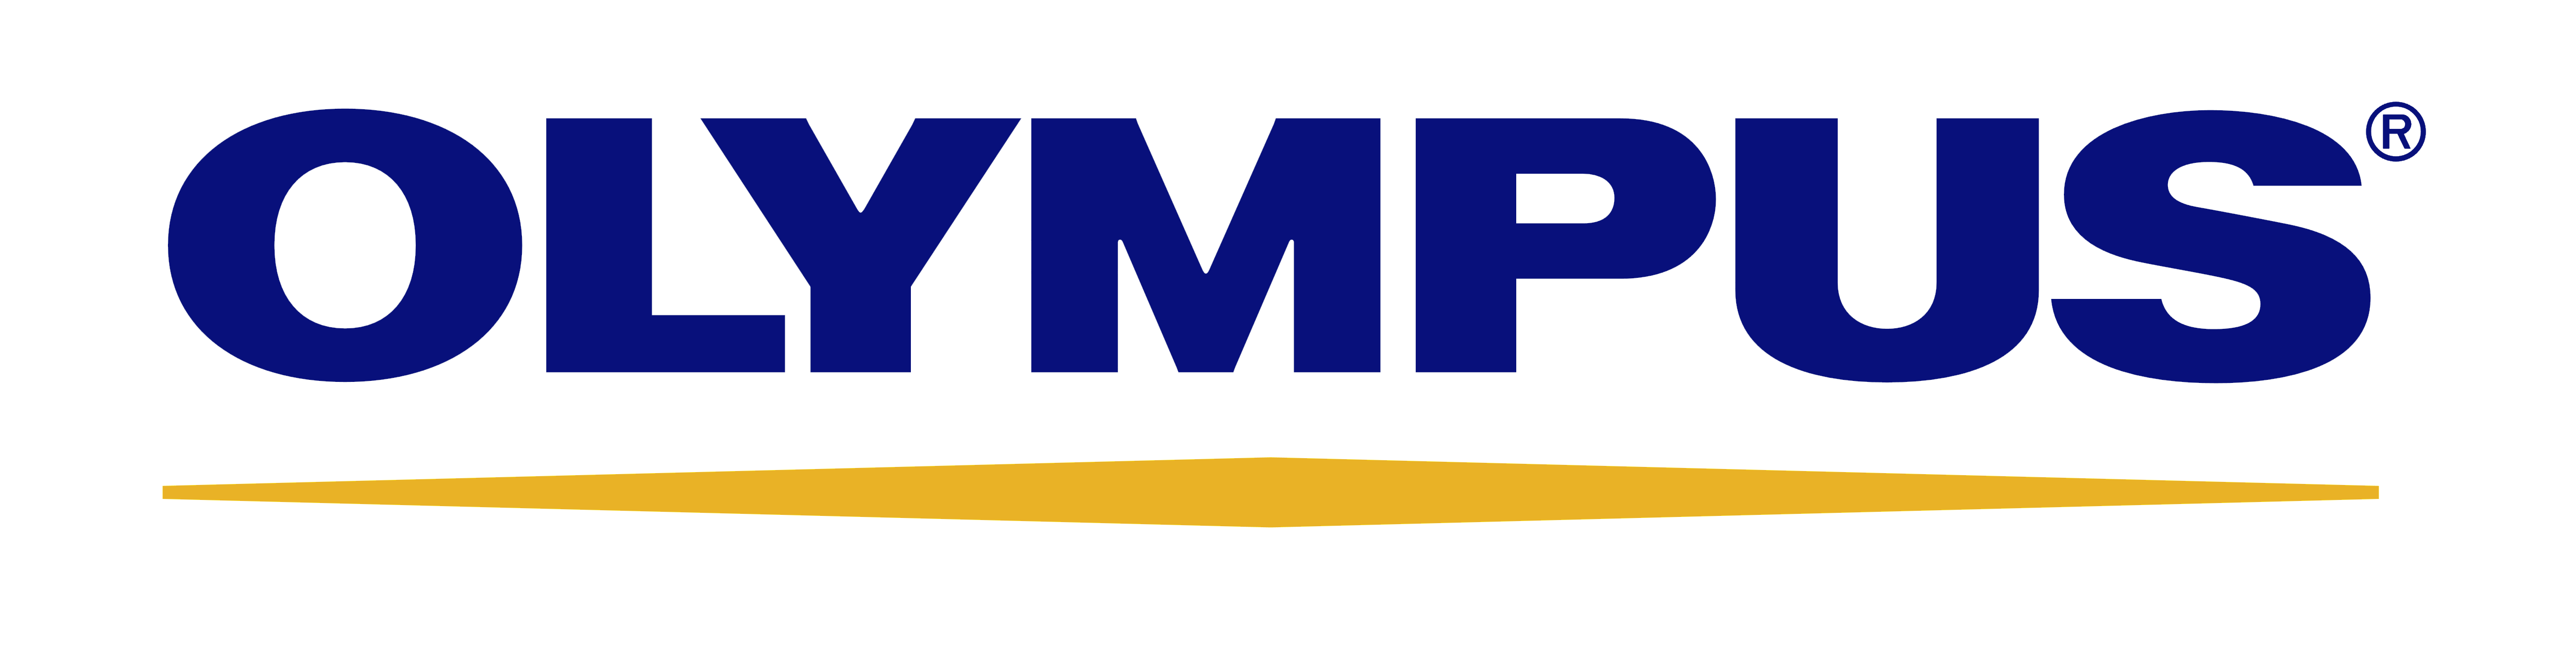 Olympis Logo - Olympus – Logos Download